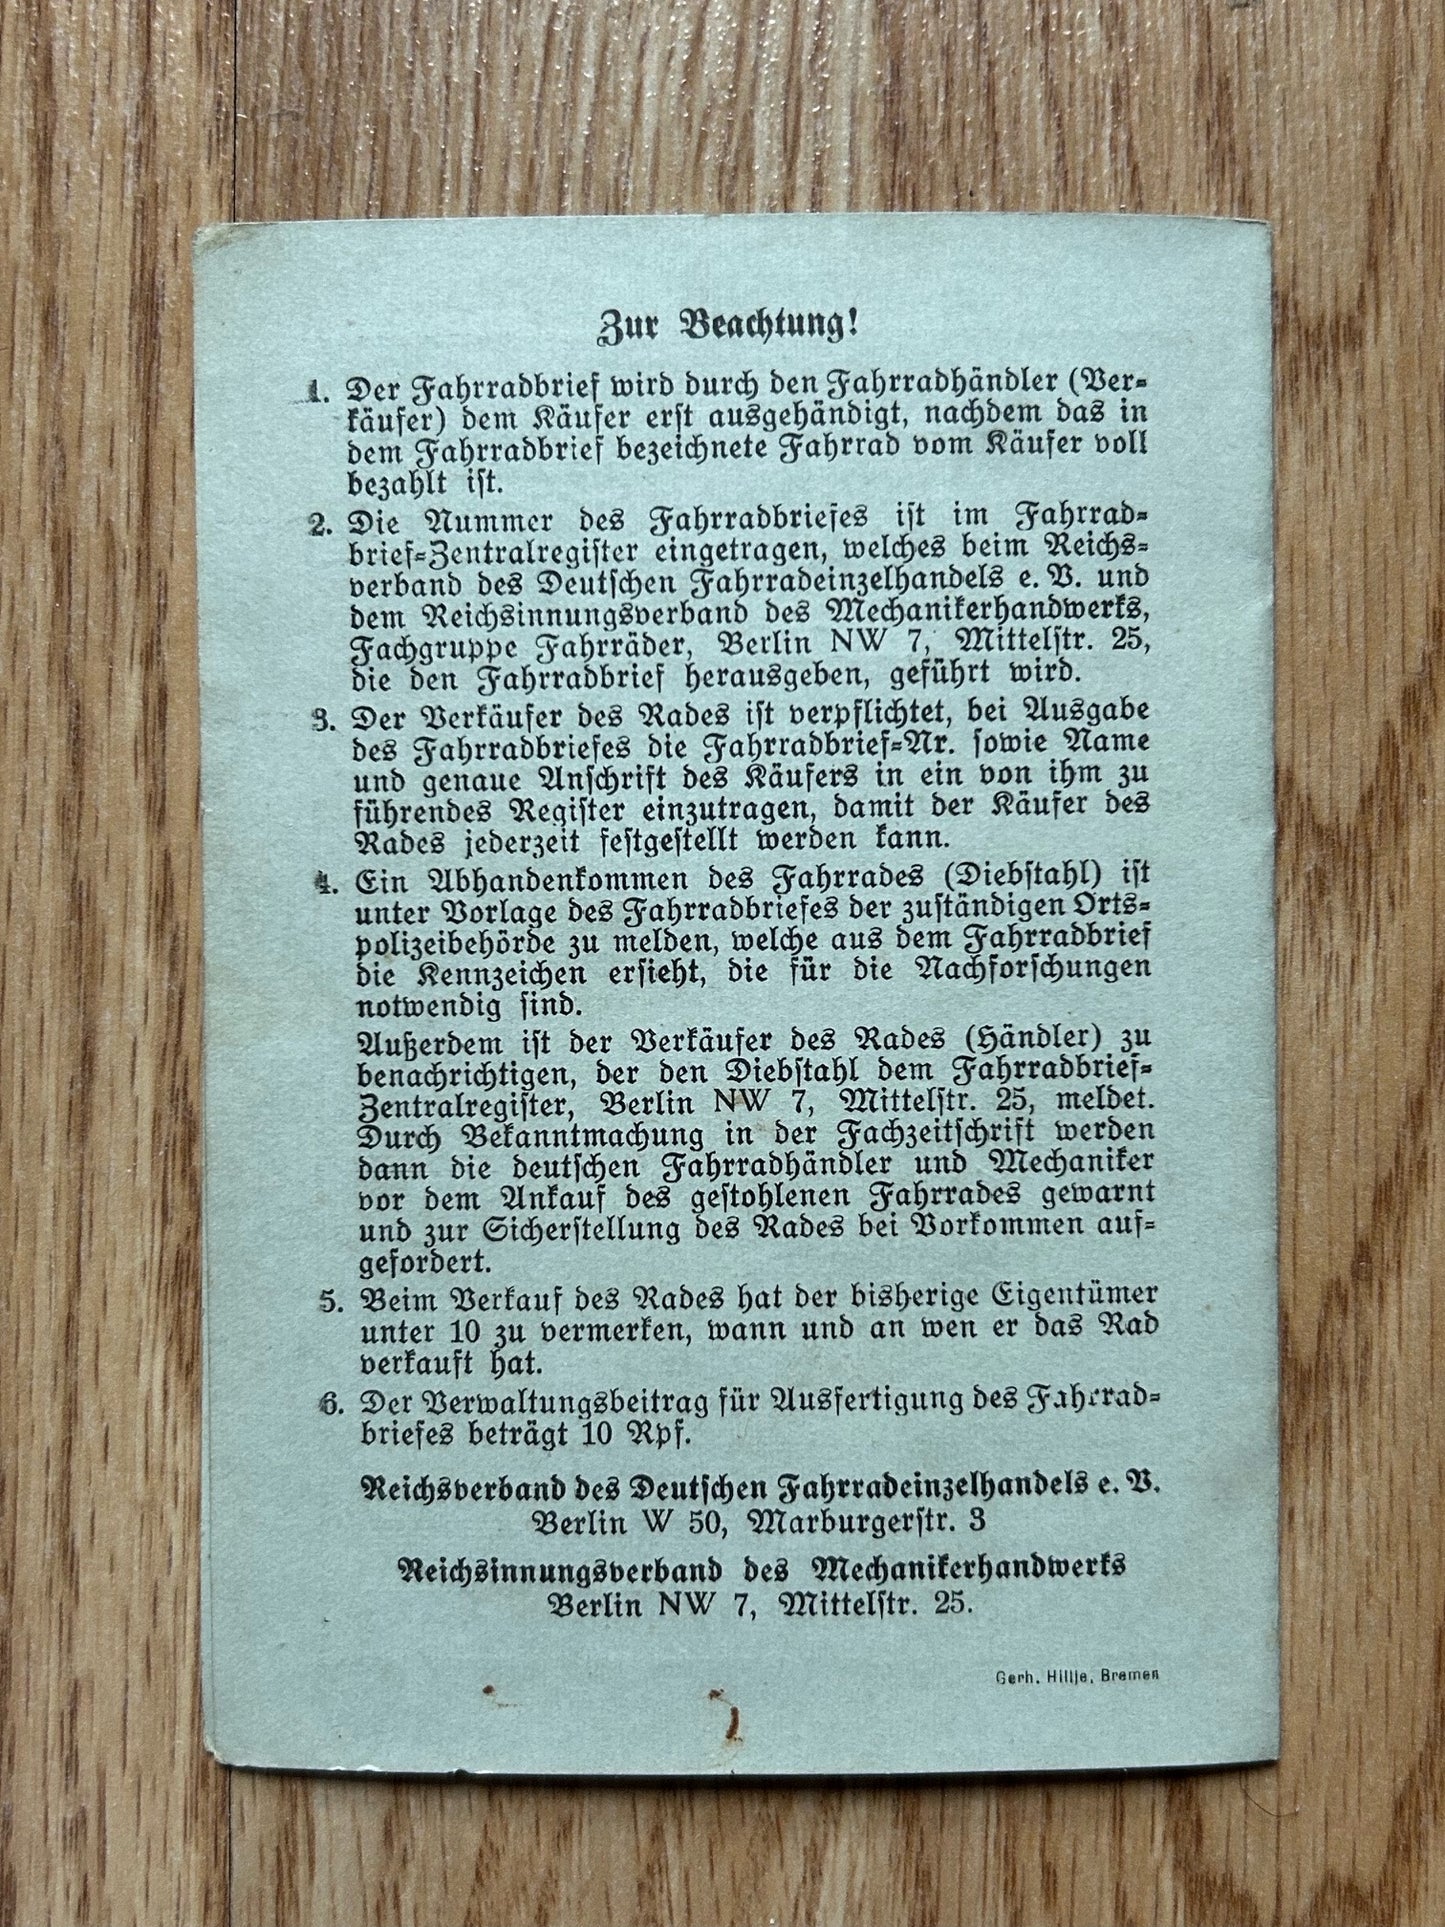 German Bicycle license - 1940